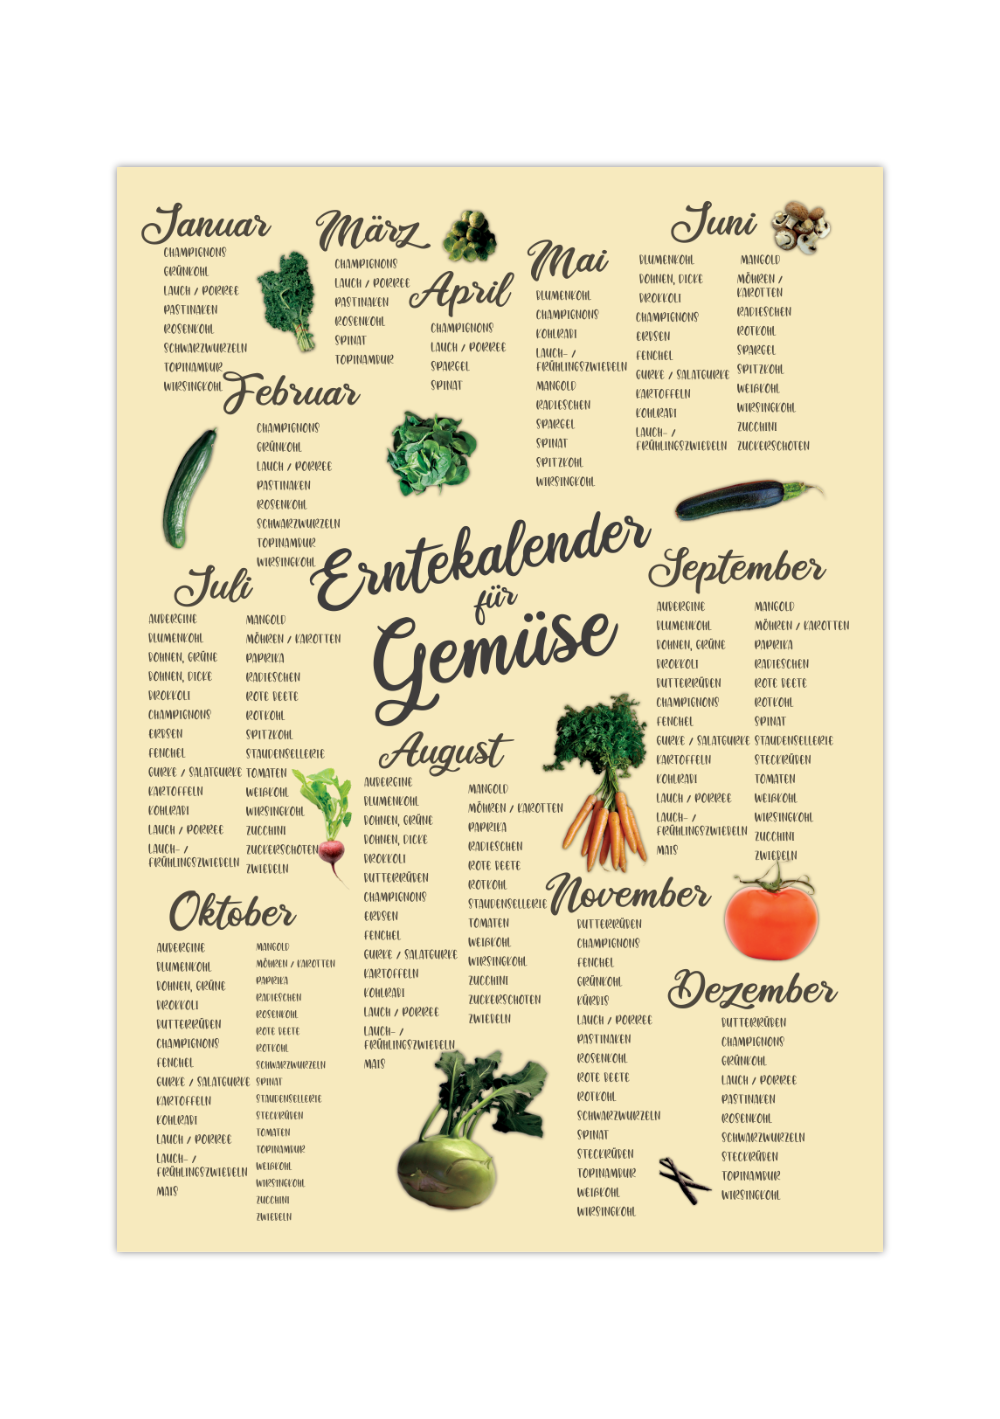 Das Poster zeigt dir einen Erntekalender für Gemüse, geordnet nach Monaten in beige.